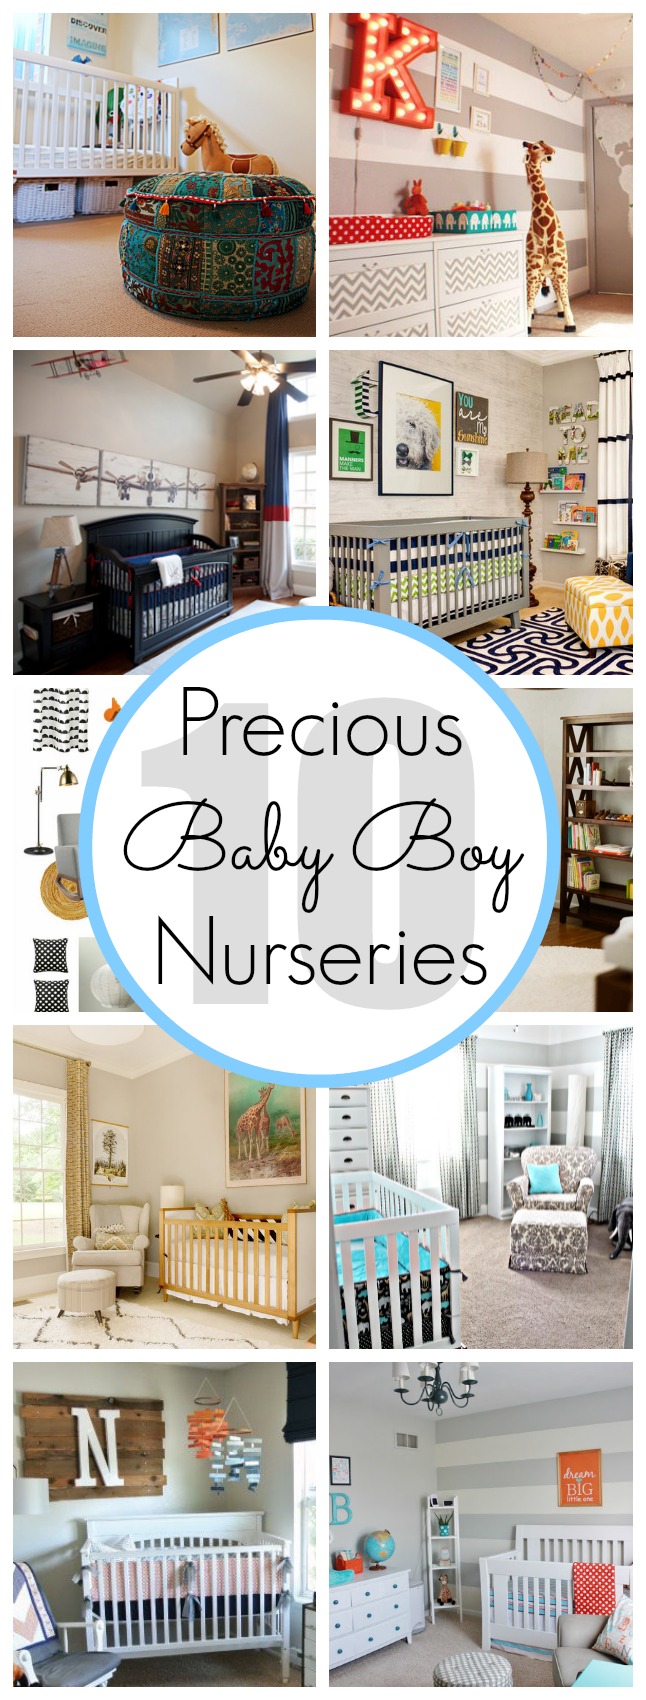 10 Baby Boy Nursery Ideas